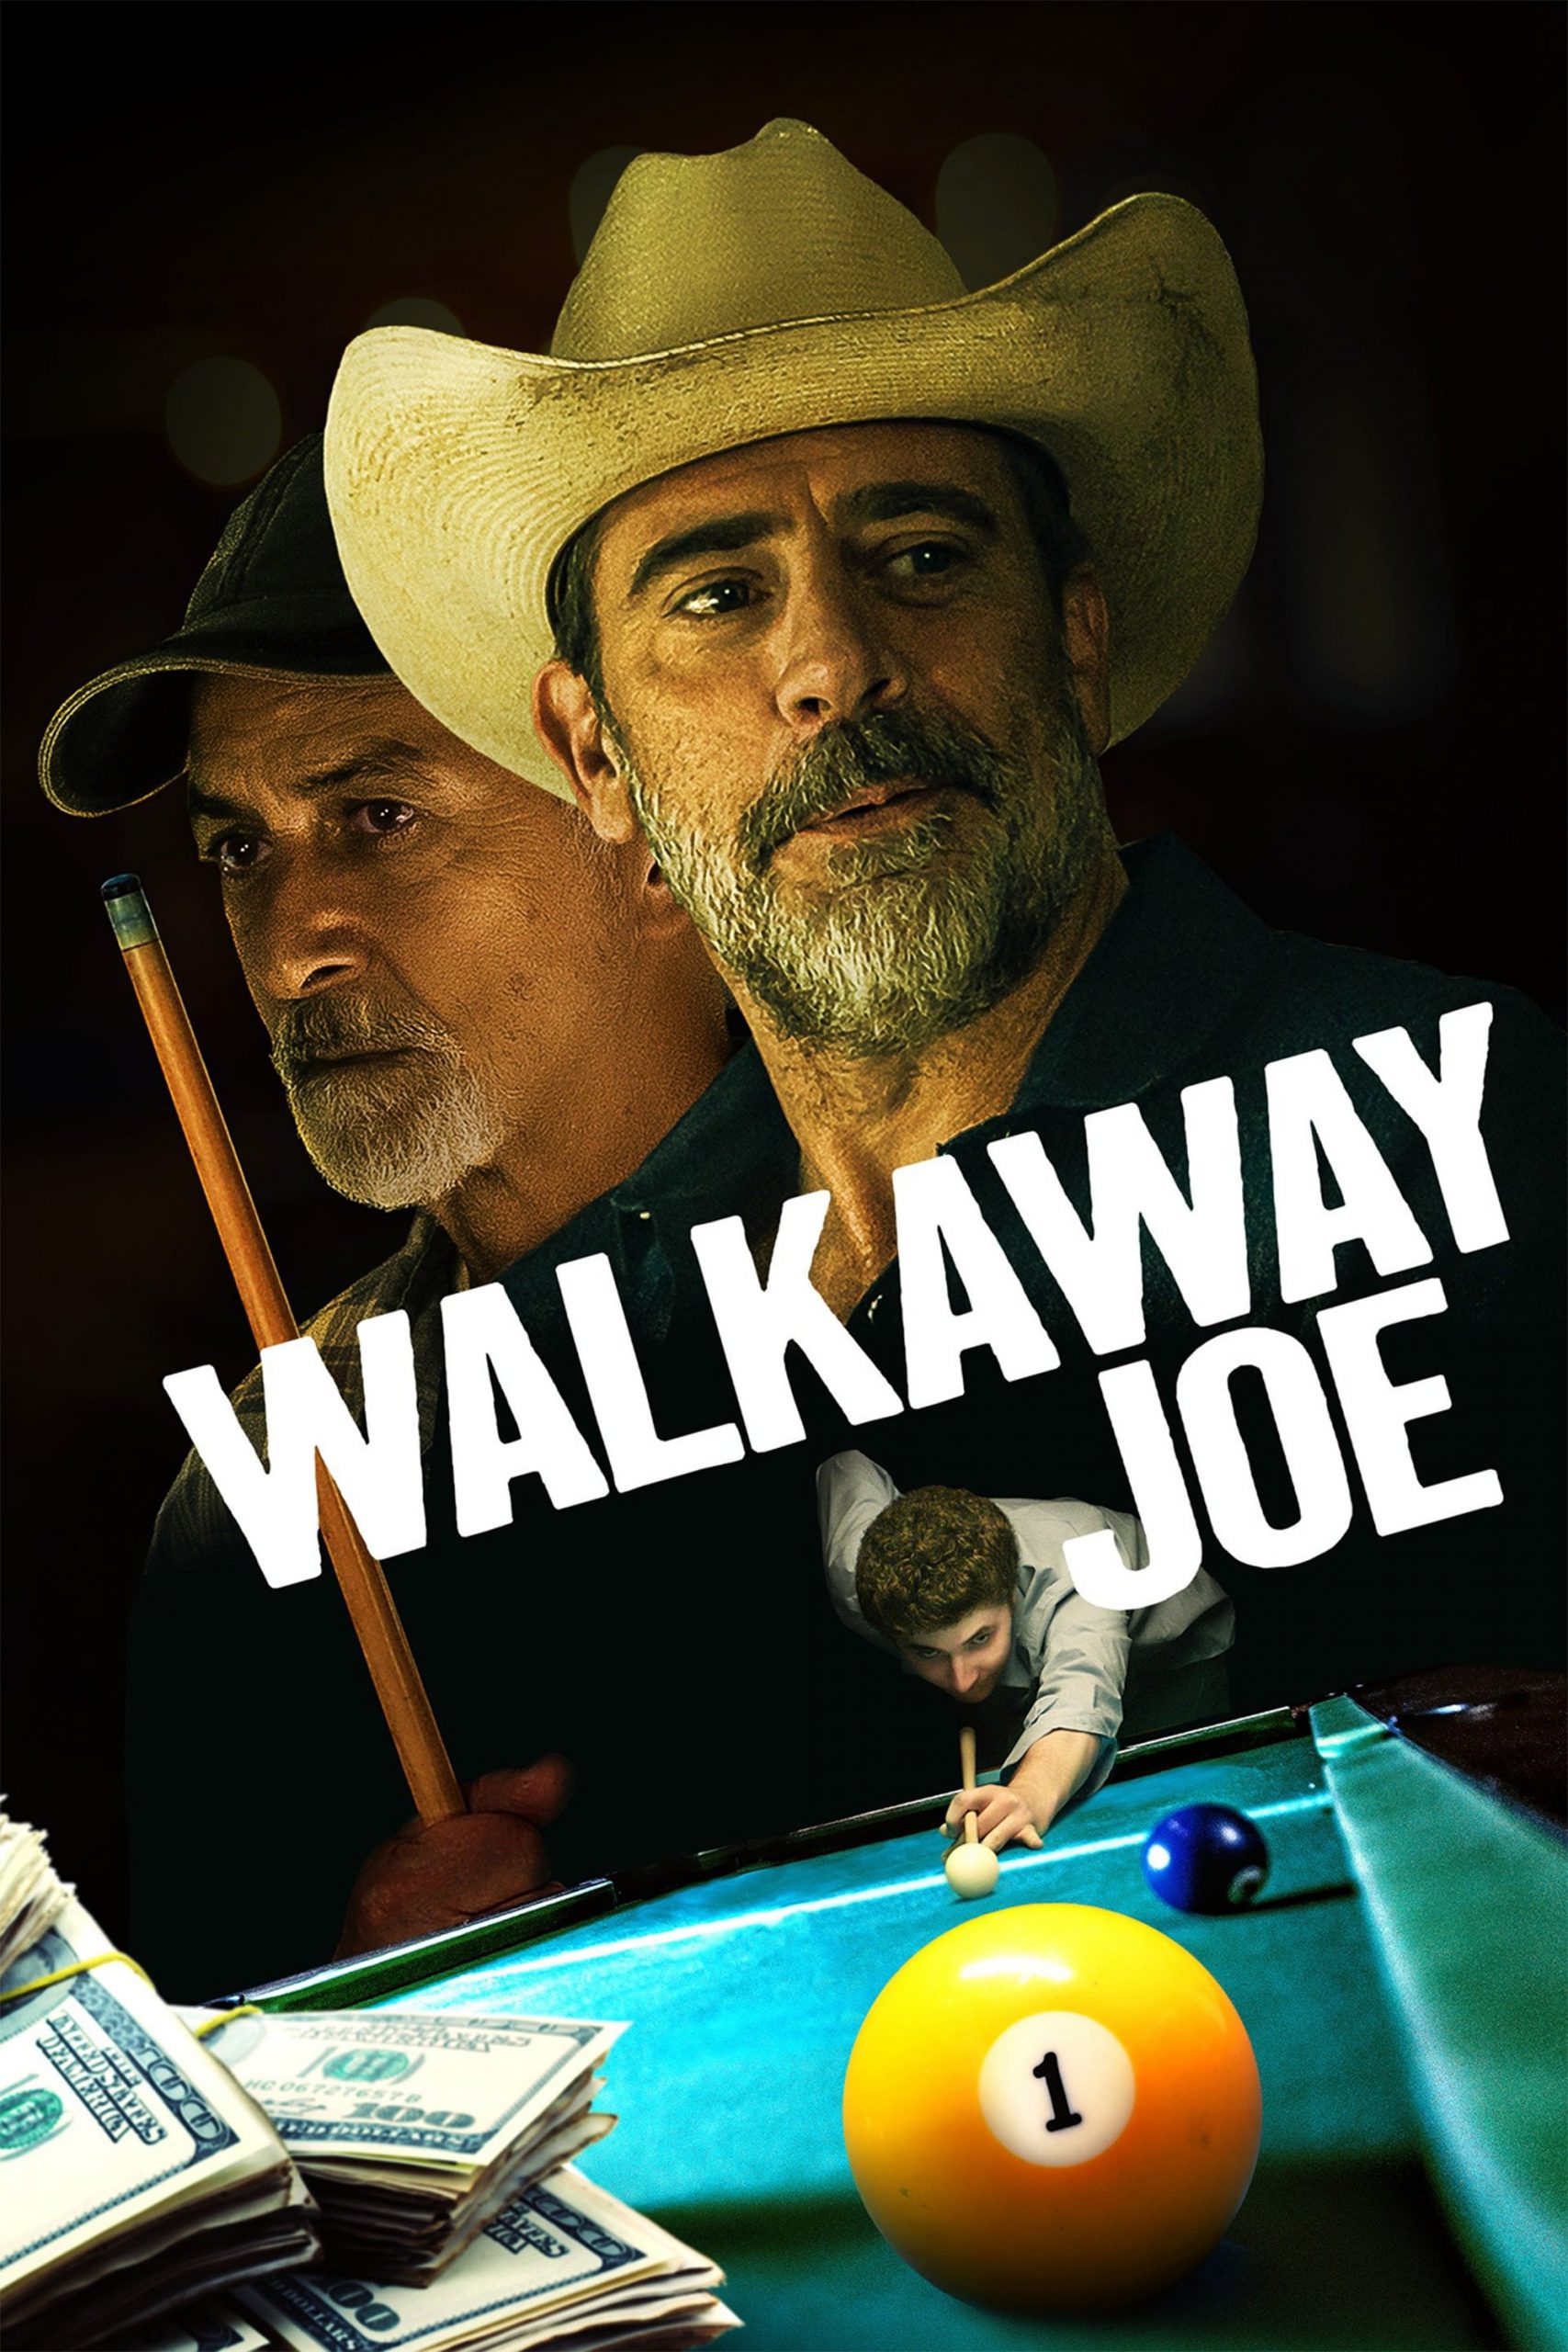 Walkaway Joe [Sub-ITA] (2020)